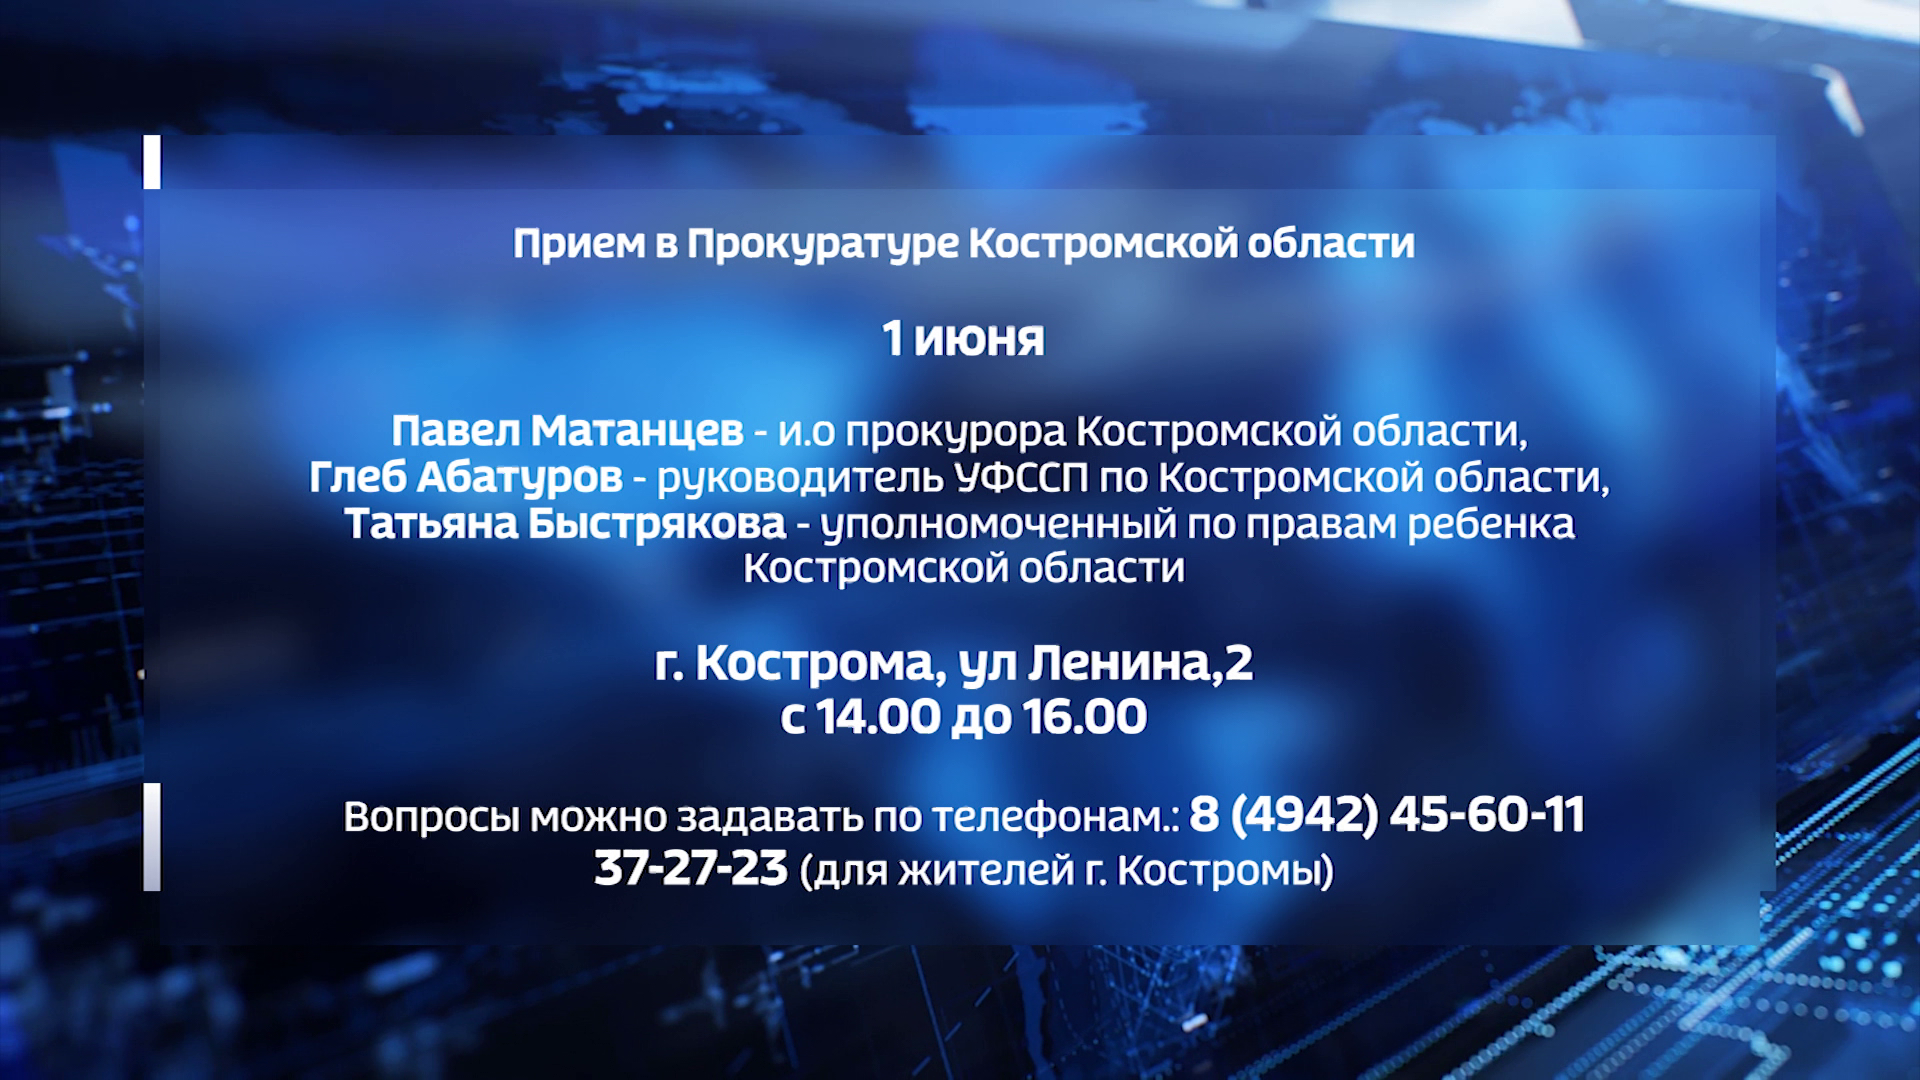 Жители Костромской области могут получить бесплатную консультацию по соблюдению прав детей